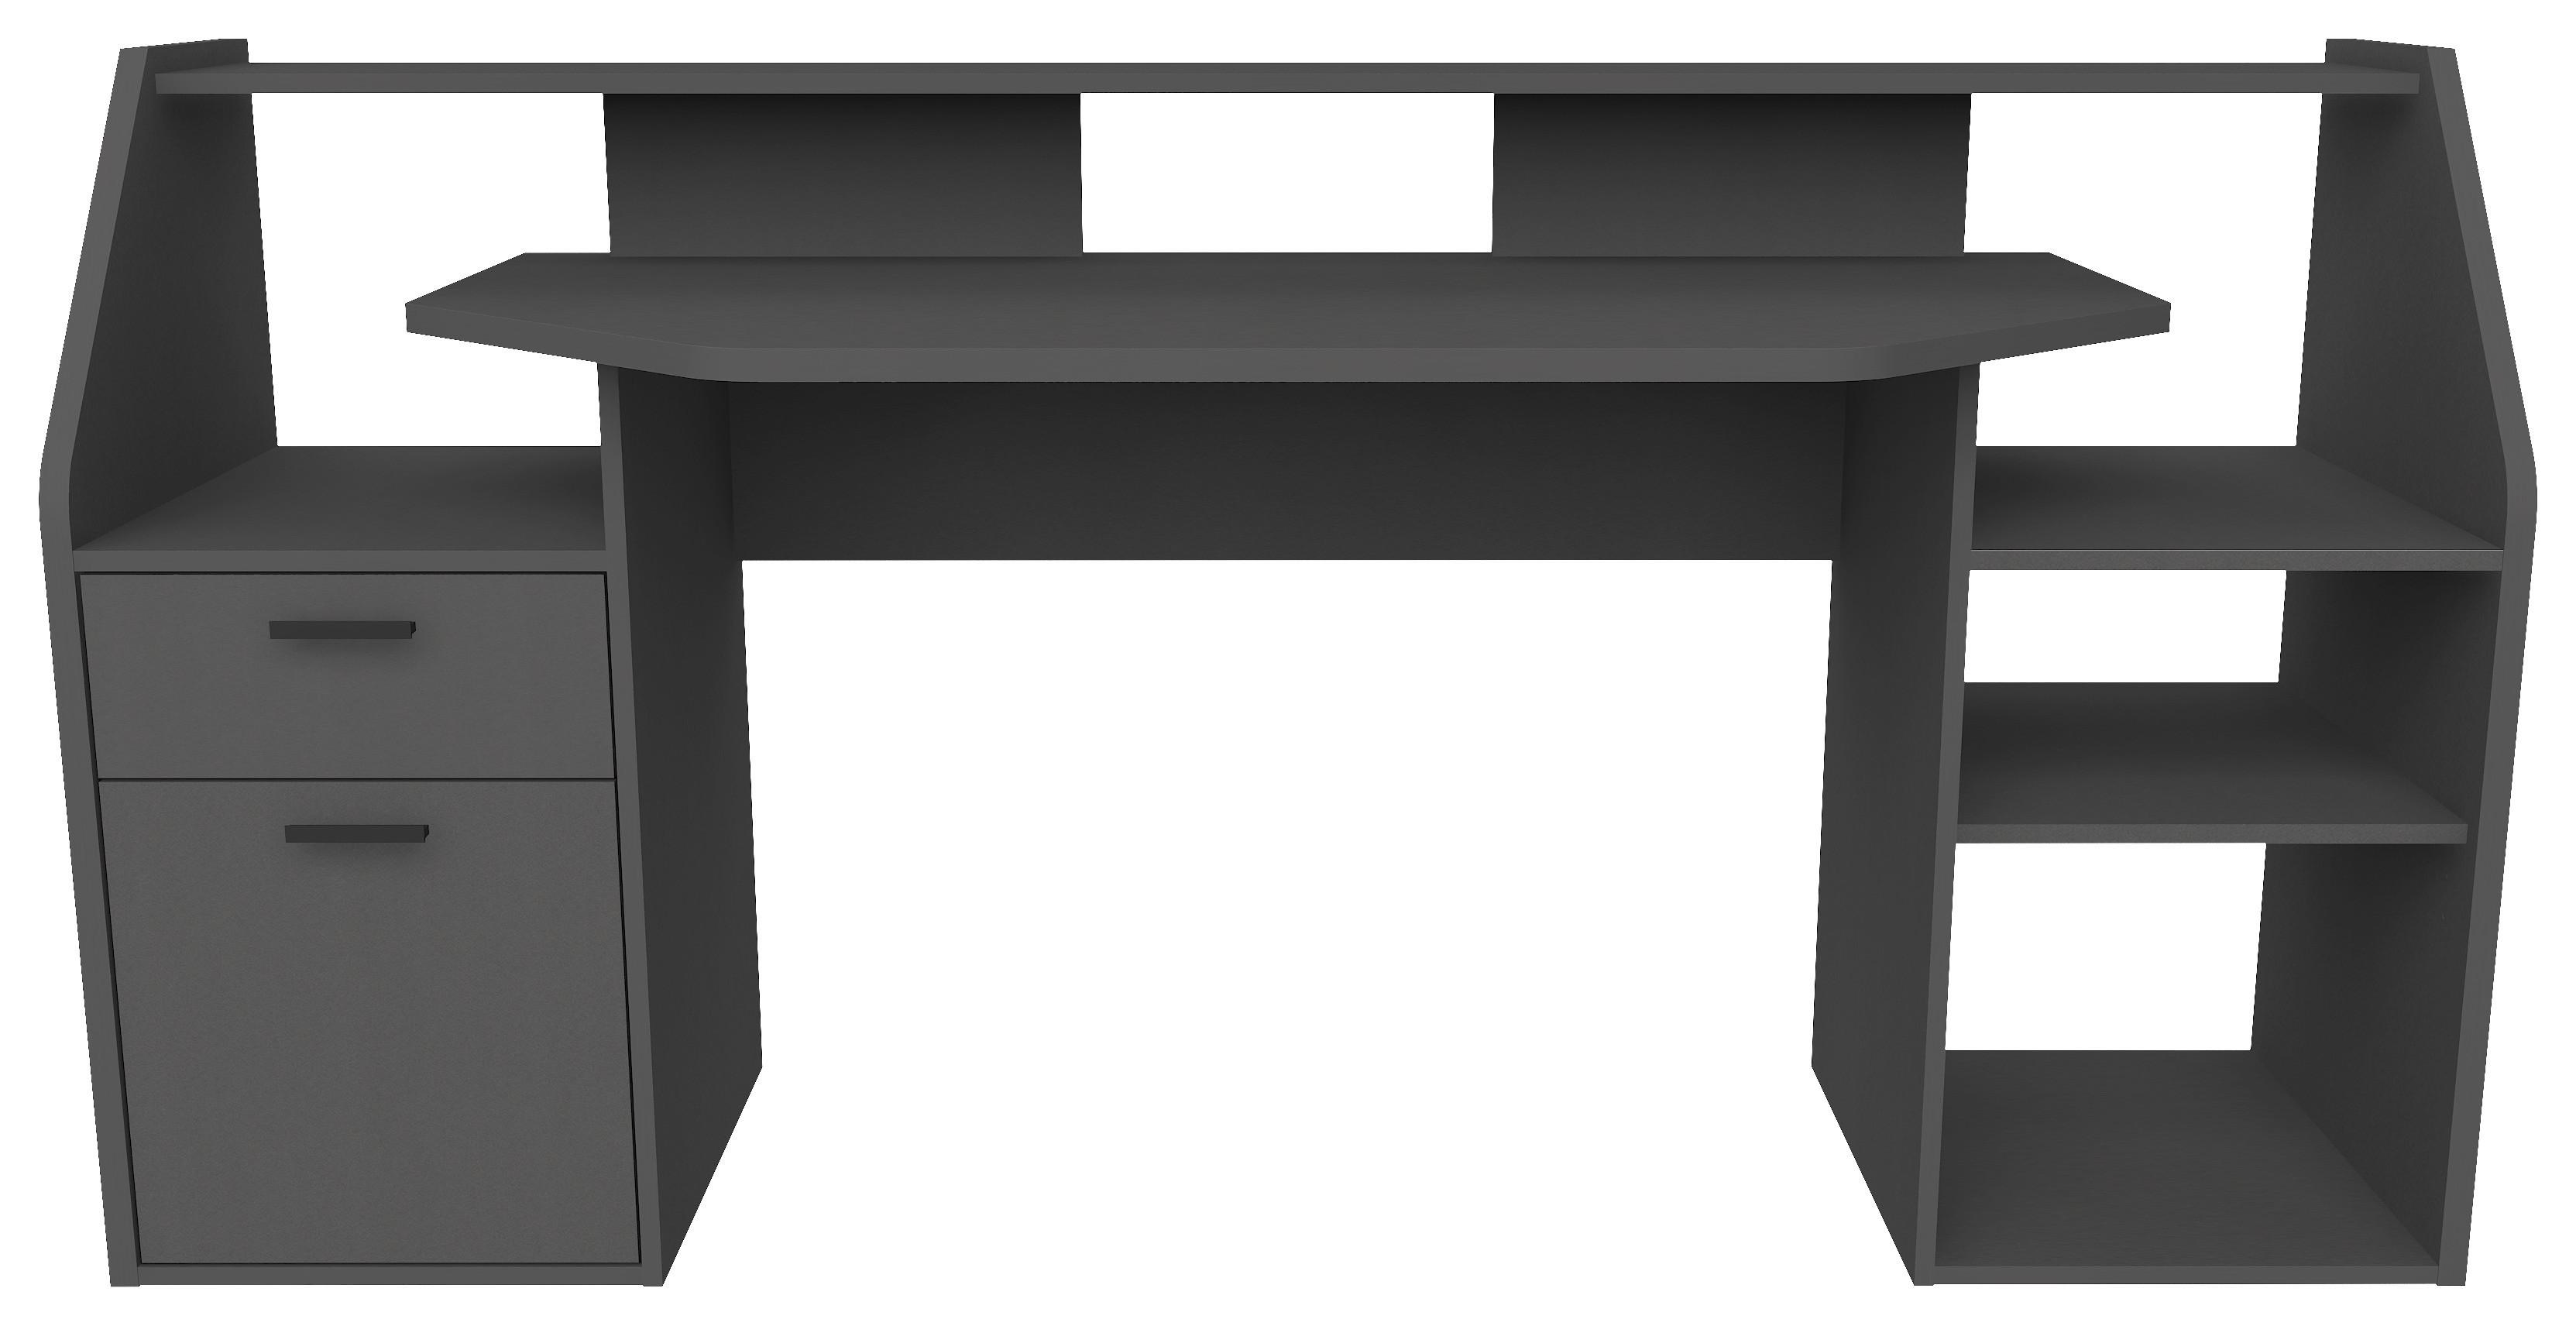 Računalniška Miza Zocker 1 - črna/antracit, Moderno, umetna masa/leseni material (180/93/68cm) - Modern Living